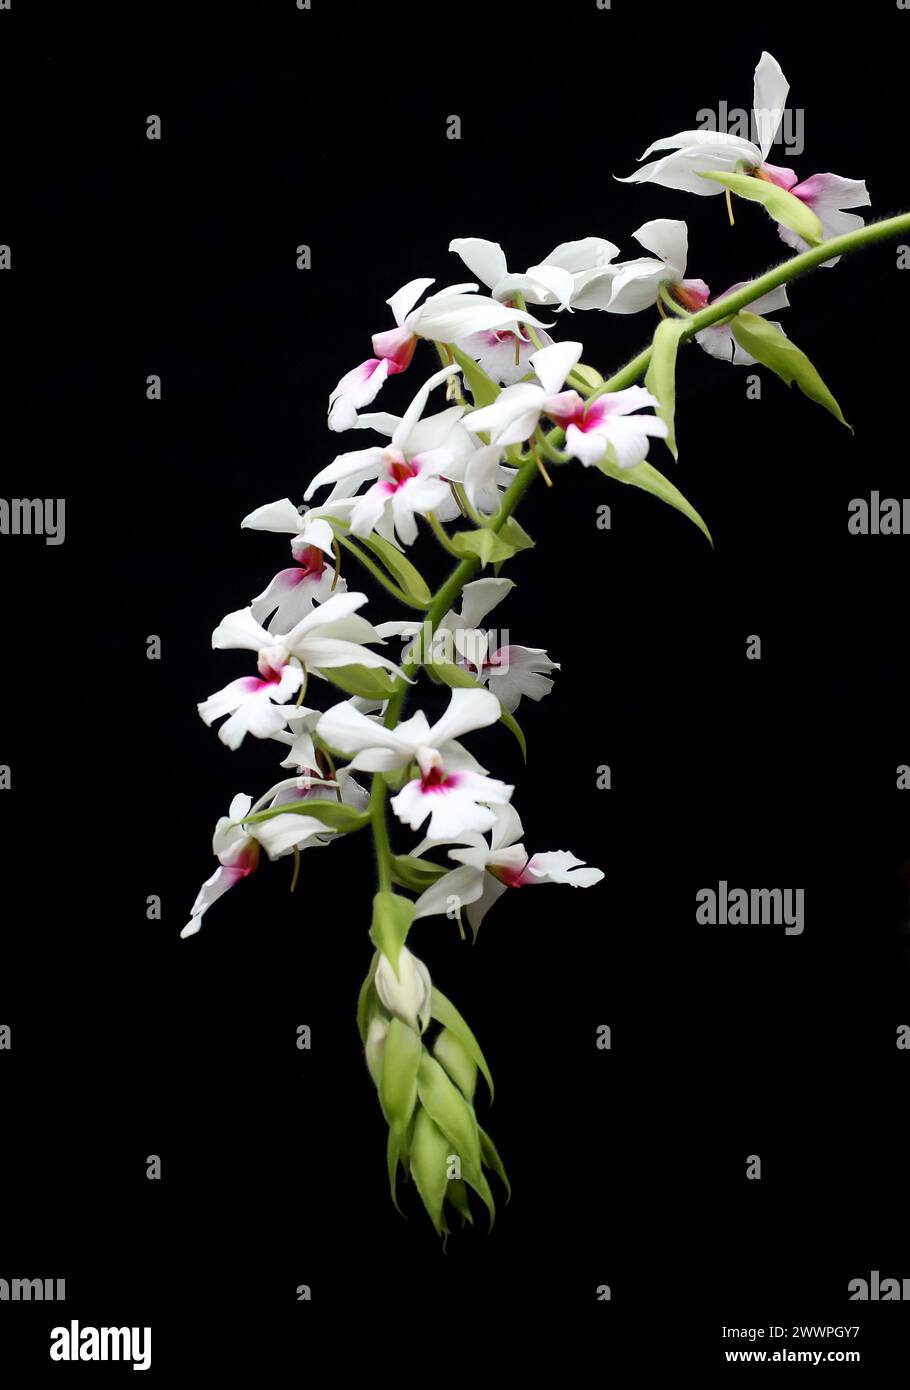 Orchidea, Calanthe vestita, Epidendroideae, Orchidaceae. Calanthe vestita è una specie di orchidea. È diffusa in gran parte del sud-est asiatico. Foto Stock